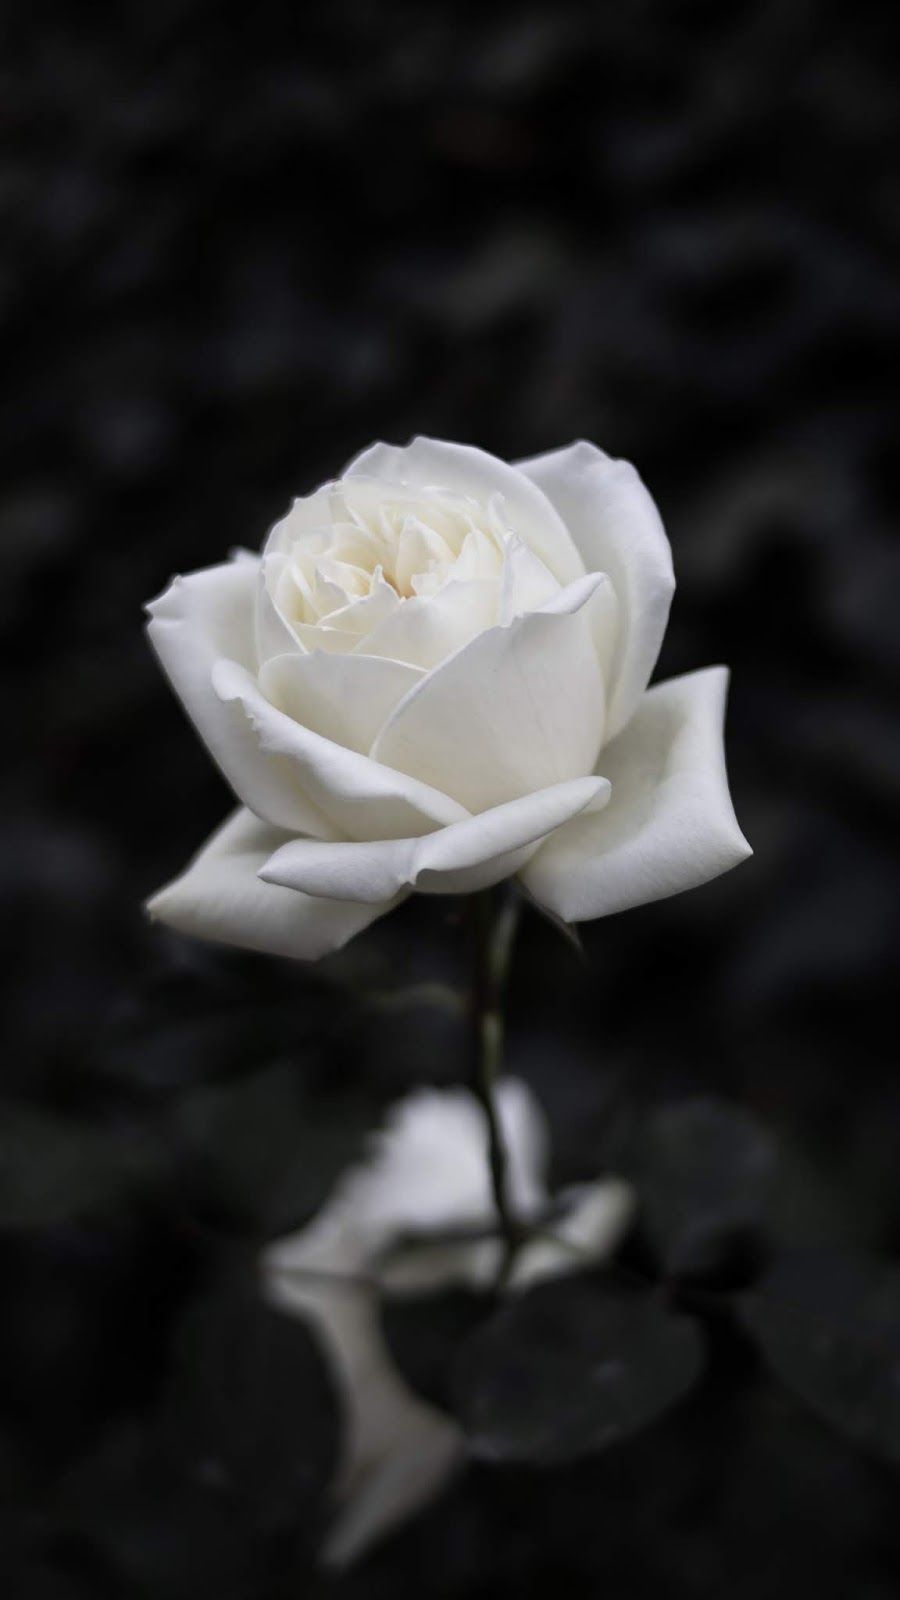 White rose. Rose flower wallpaper, Dark background